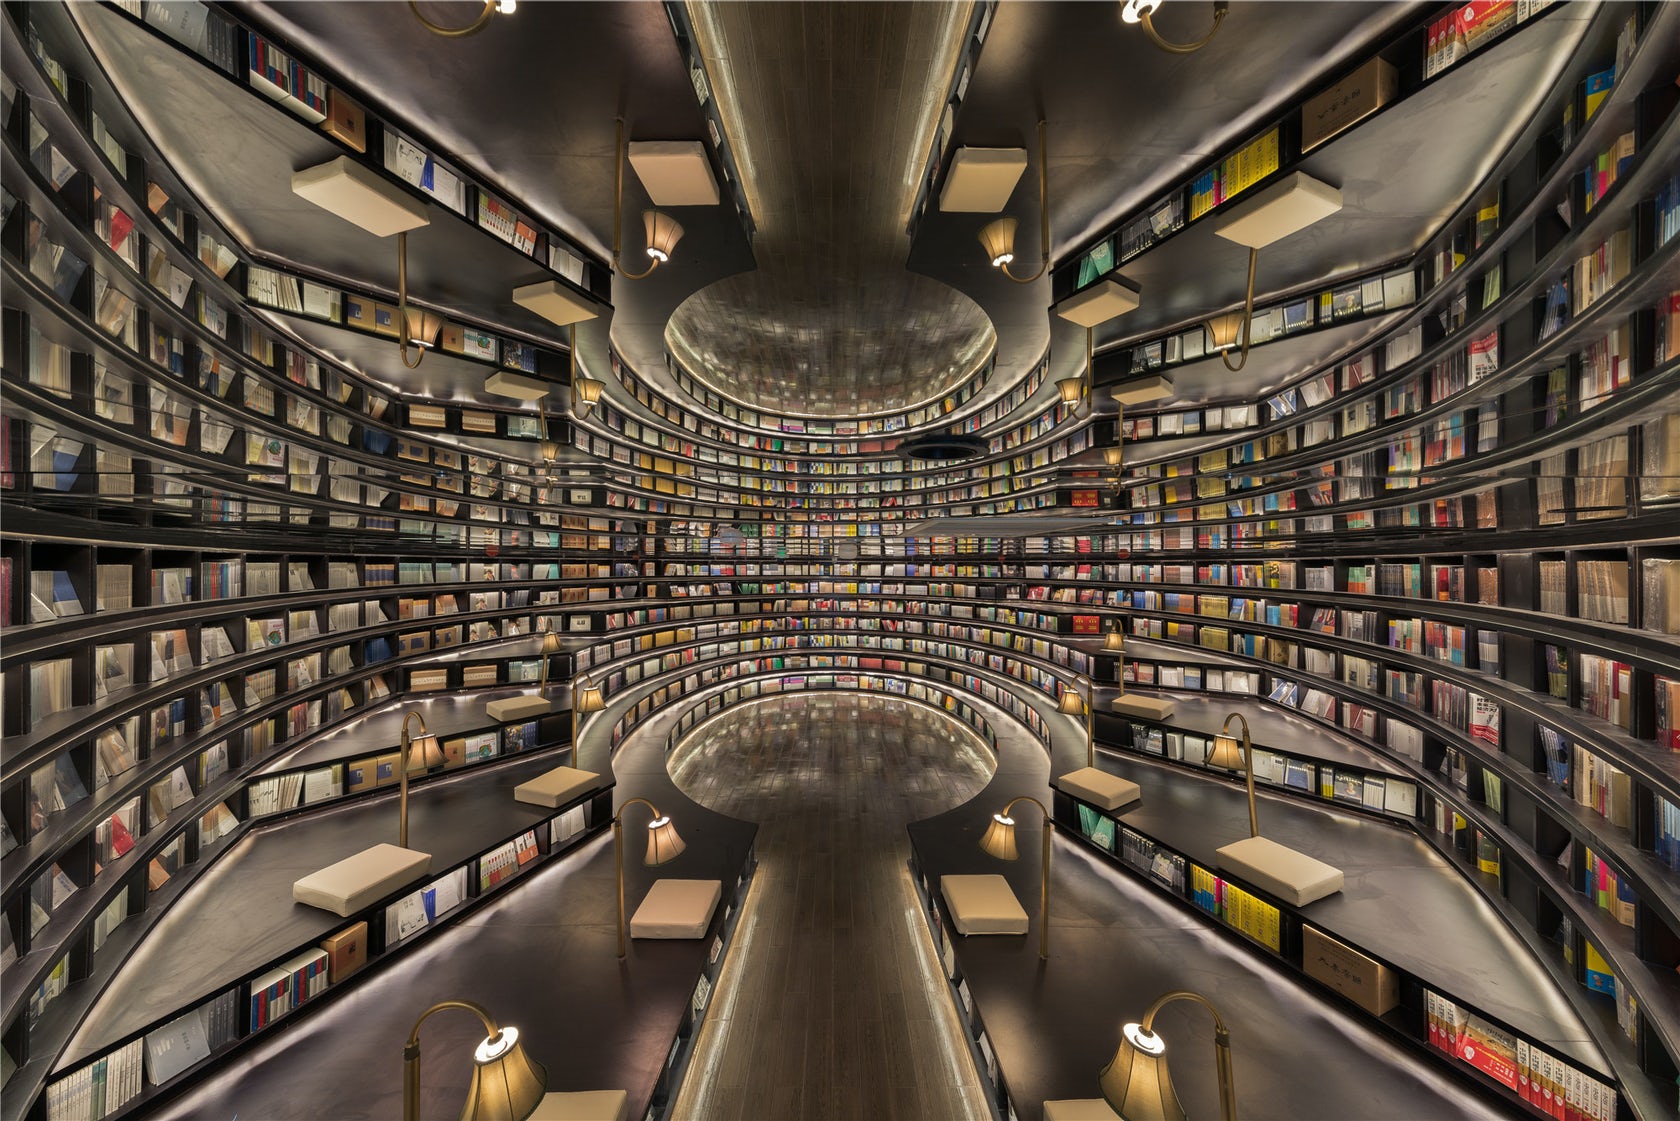 Hình ảnh thư viện hiện đại sang trọng ở Thượng Hải, Trung Quốc